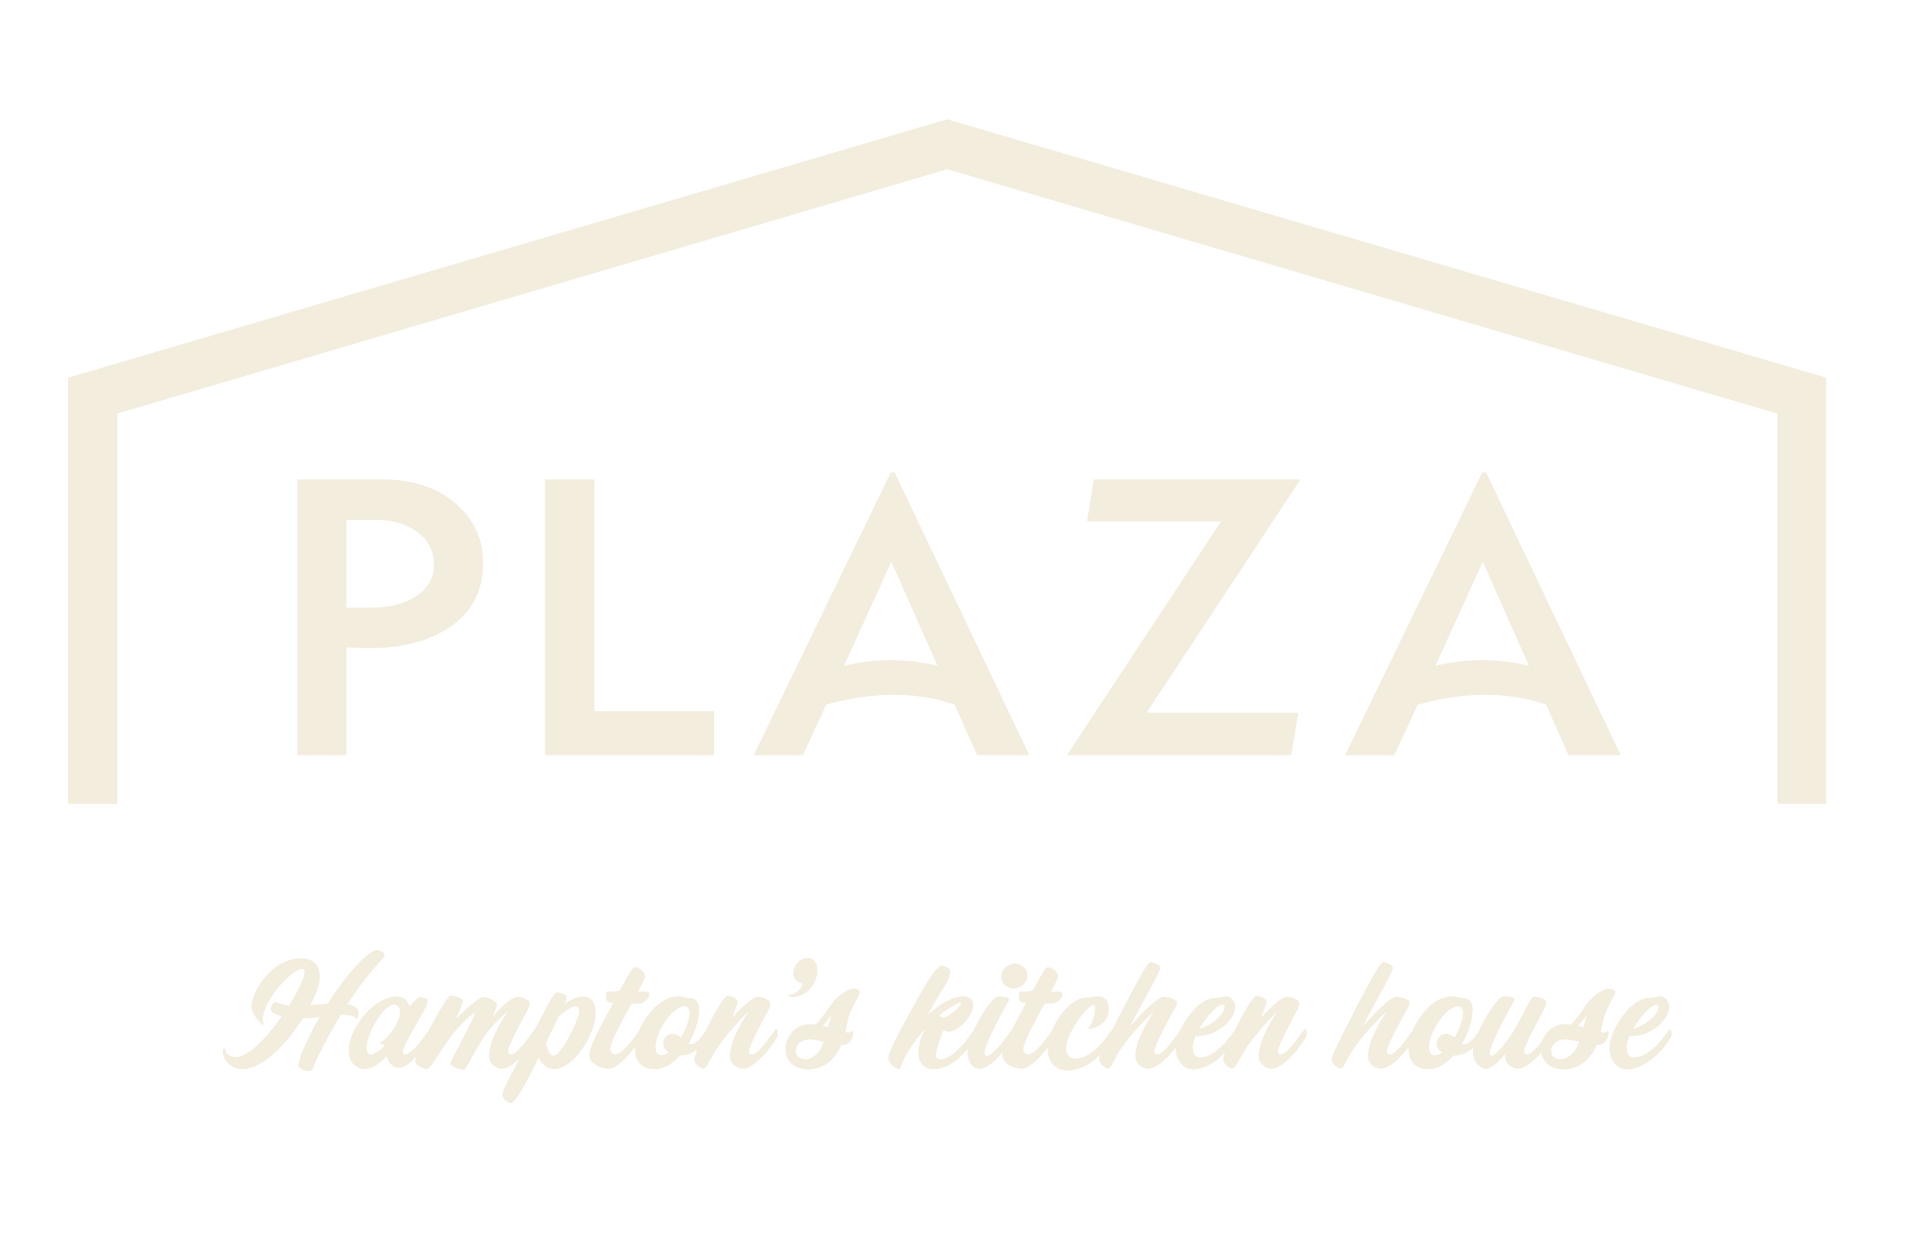 Logo del restaurante Plaza Hampton's Kitchen House